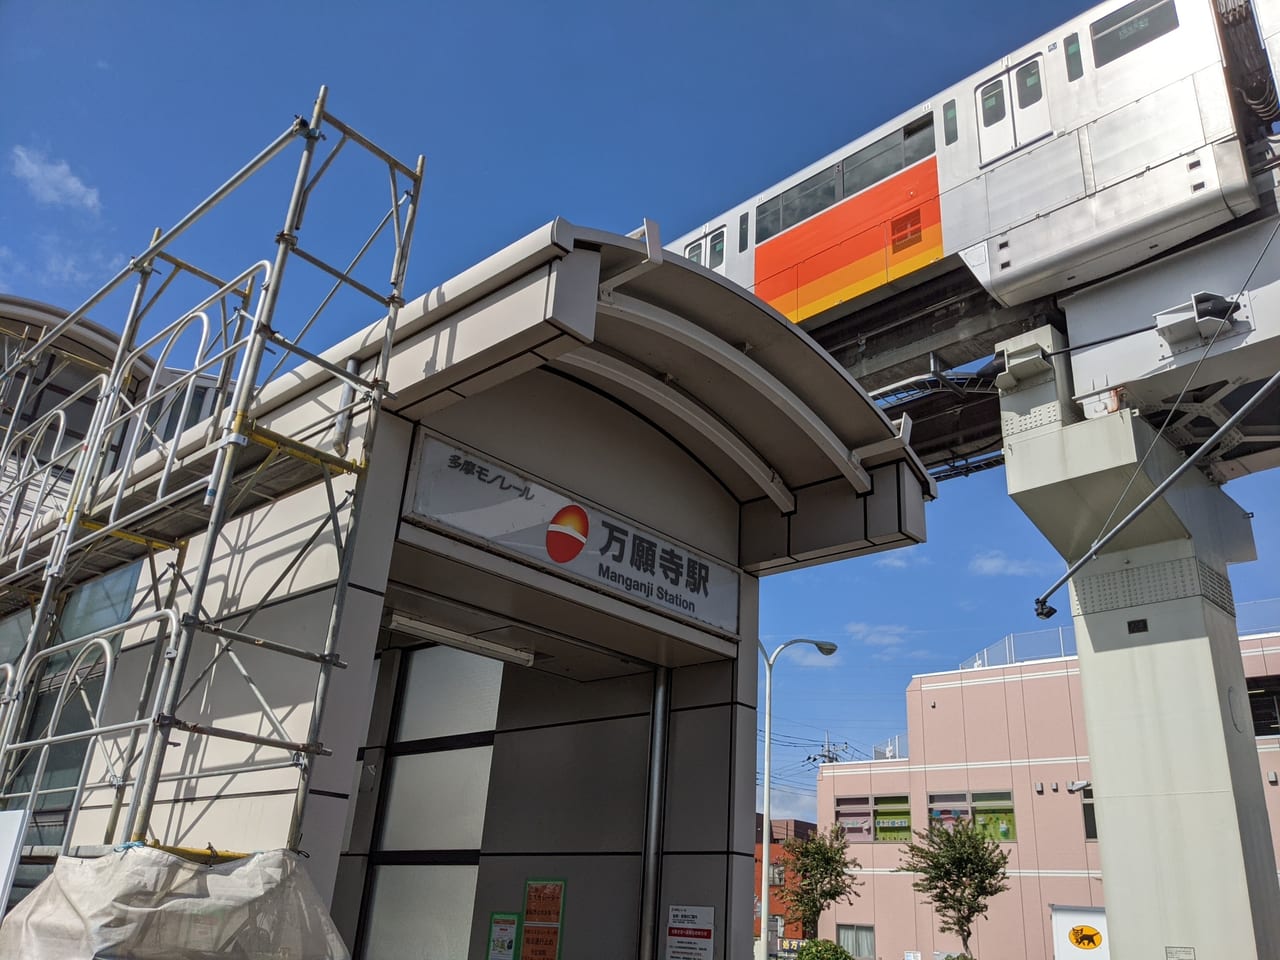 日野市 モノレール万願寺駅が工事中 西側のエレベーターは使えません 車いす ベビーカーの方はご注意を 号外net 日野市